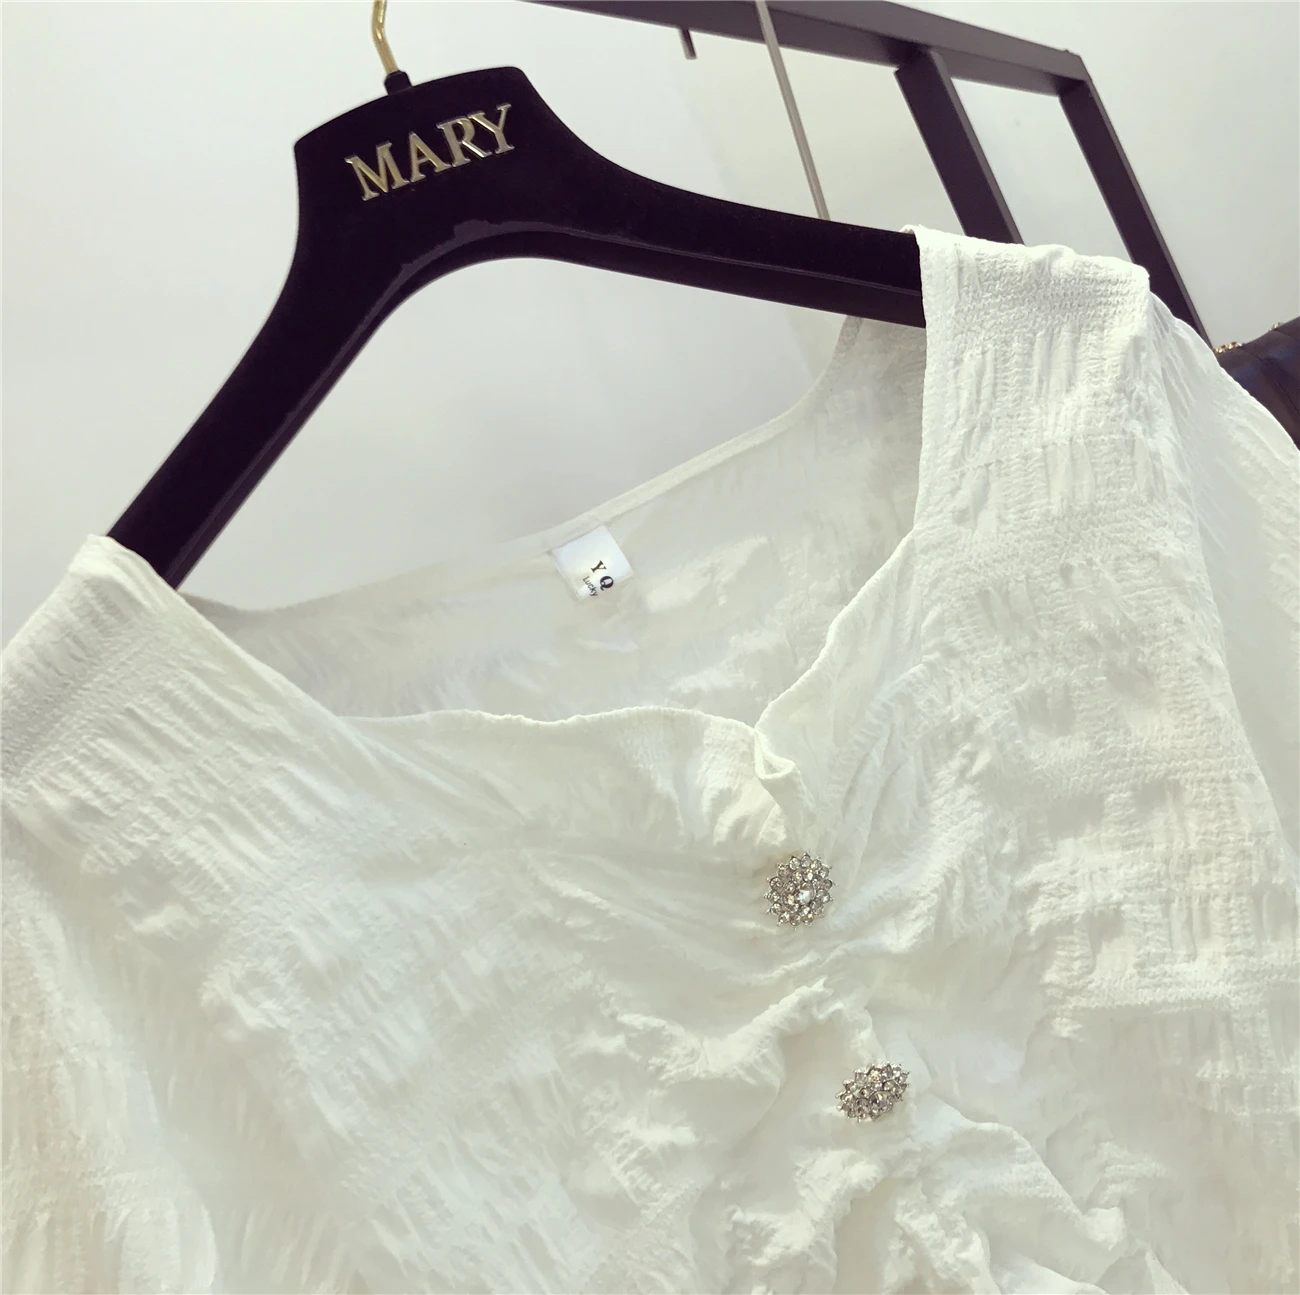 Г. летняя модная дизайнерская блузка с рюшами и квадратным воротником, рукав-раструб белый, рубашка и юбка в горошек ярких цветов милый комплект из 2 предметов для девочек